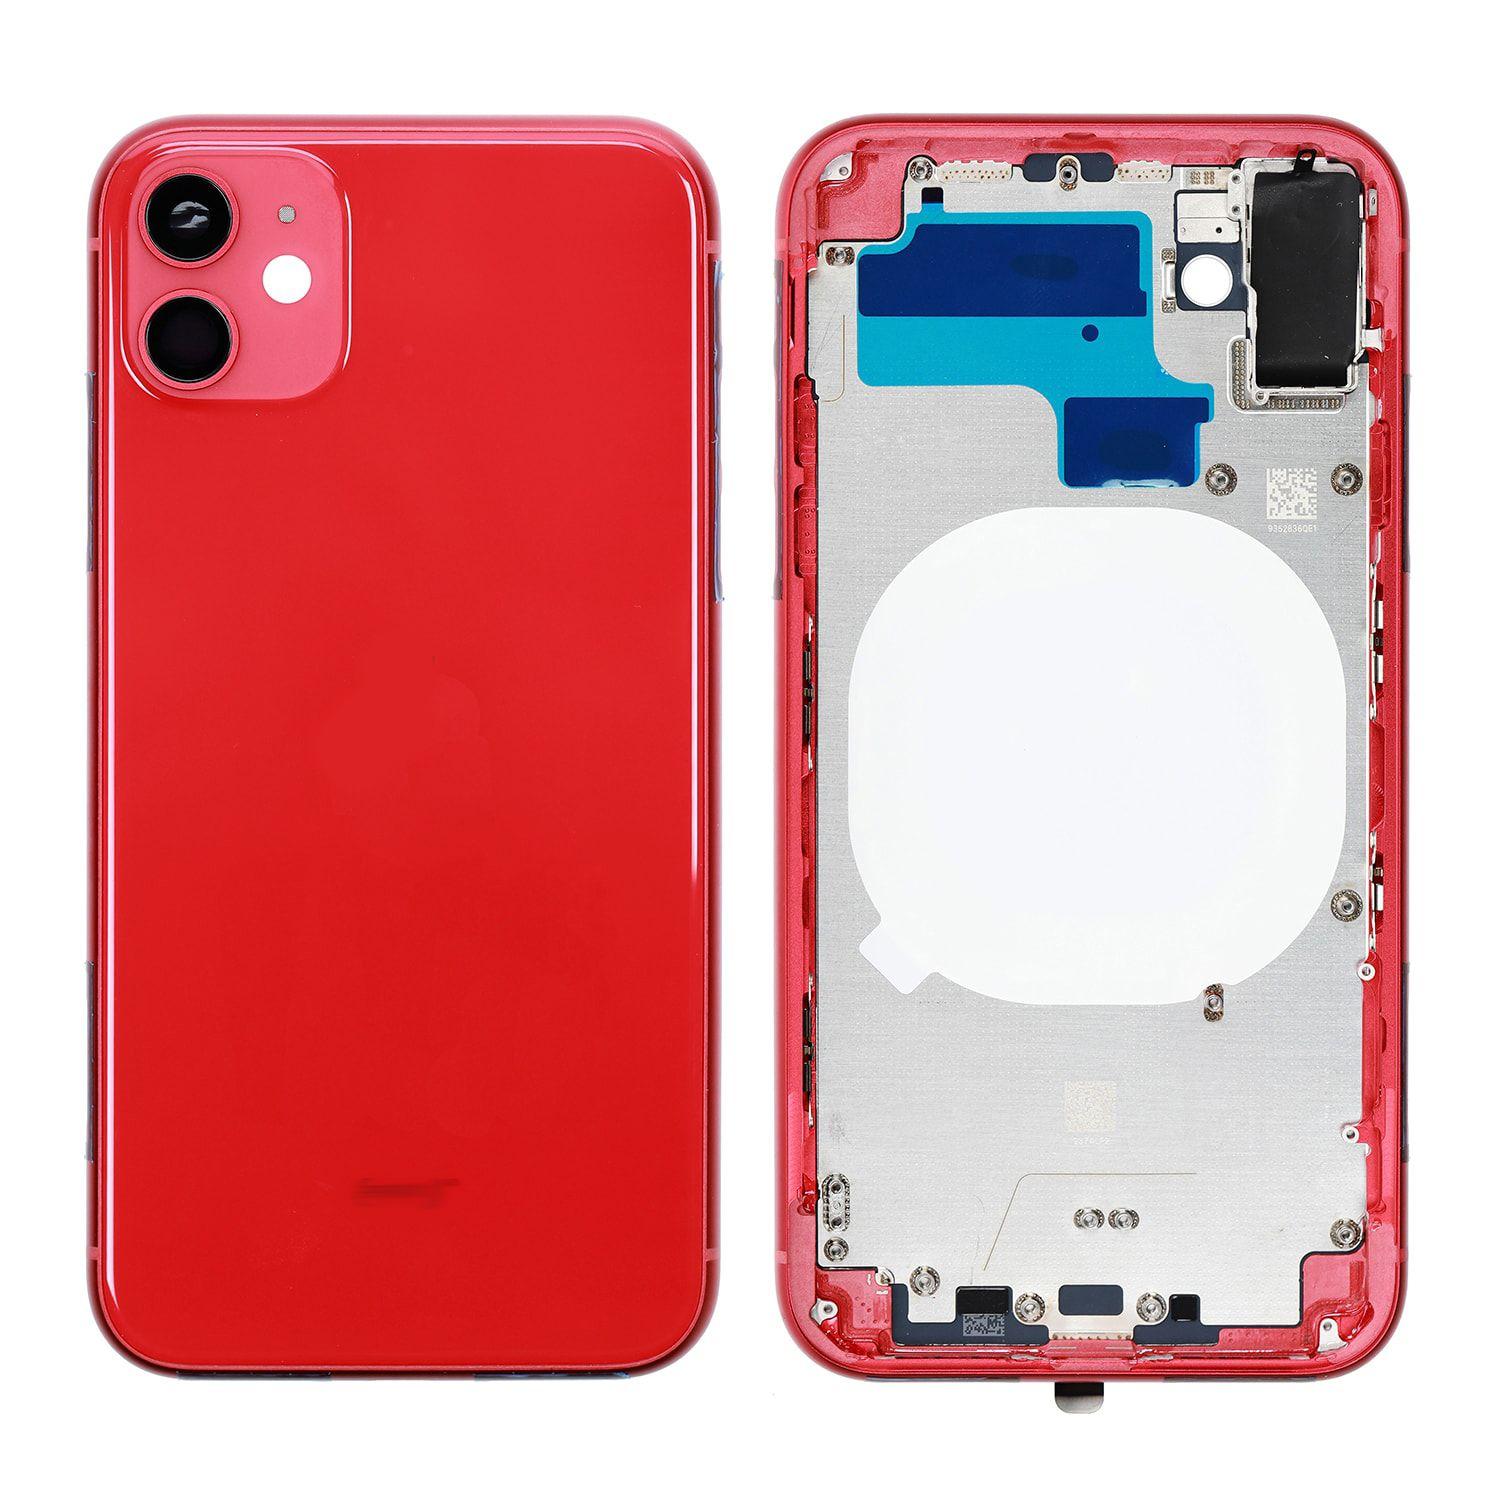 Korpus iPhone 11 + zadní kryt červený